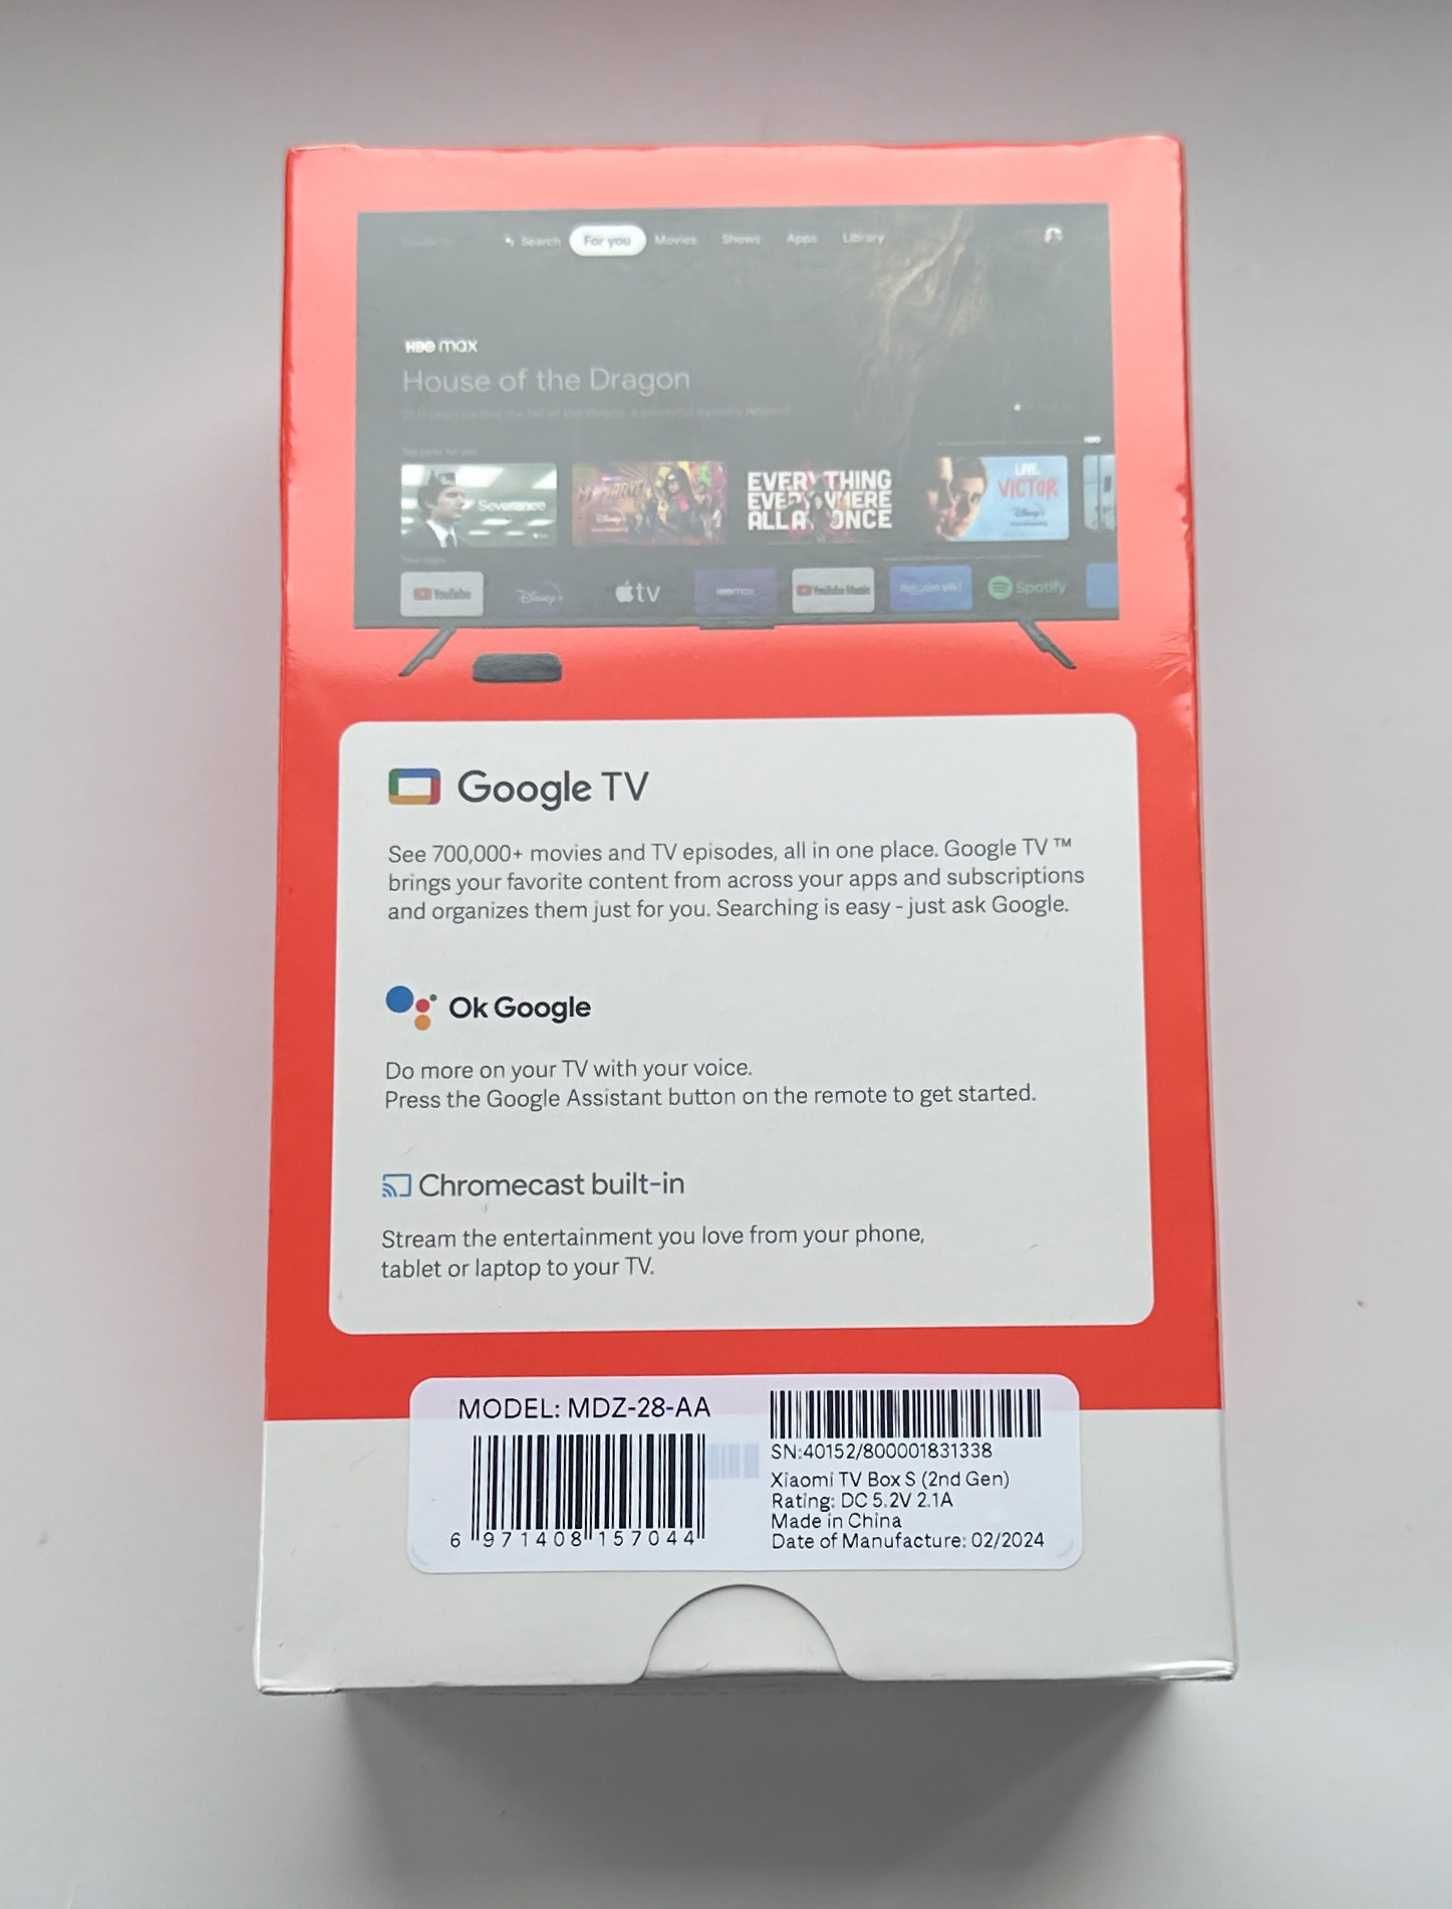 НОВА ТБ Приставка Медіа Плеєр Xiaomi Mi TV Box S (2nd Gen)